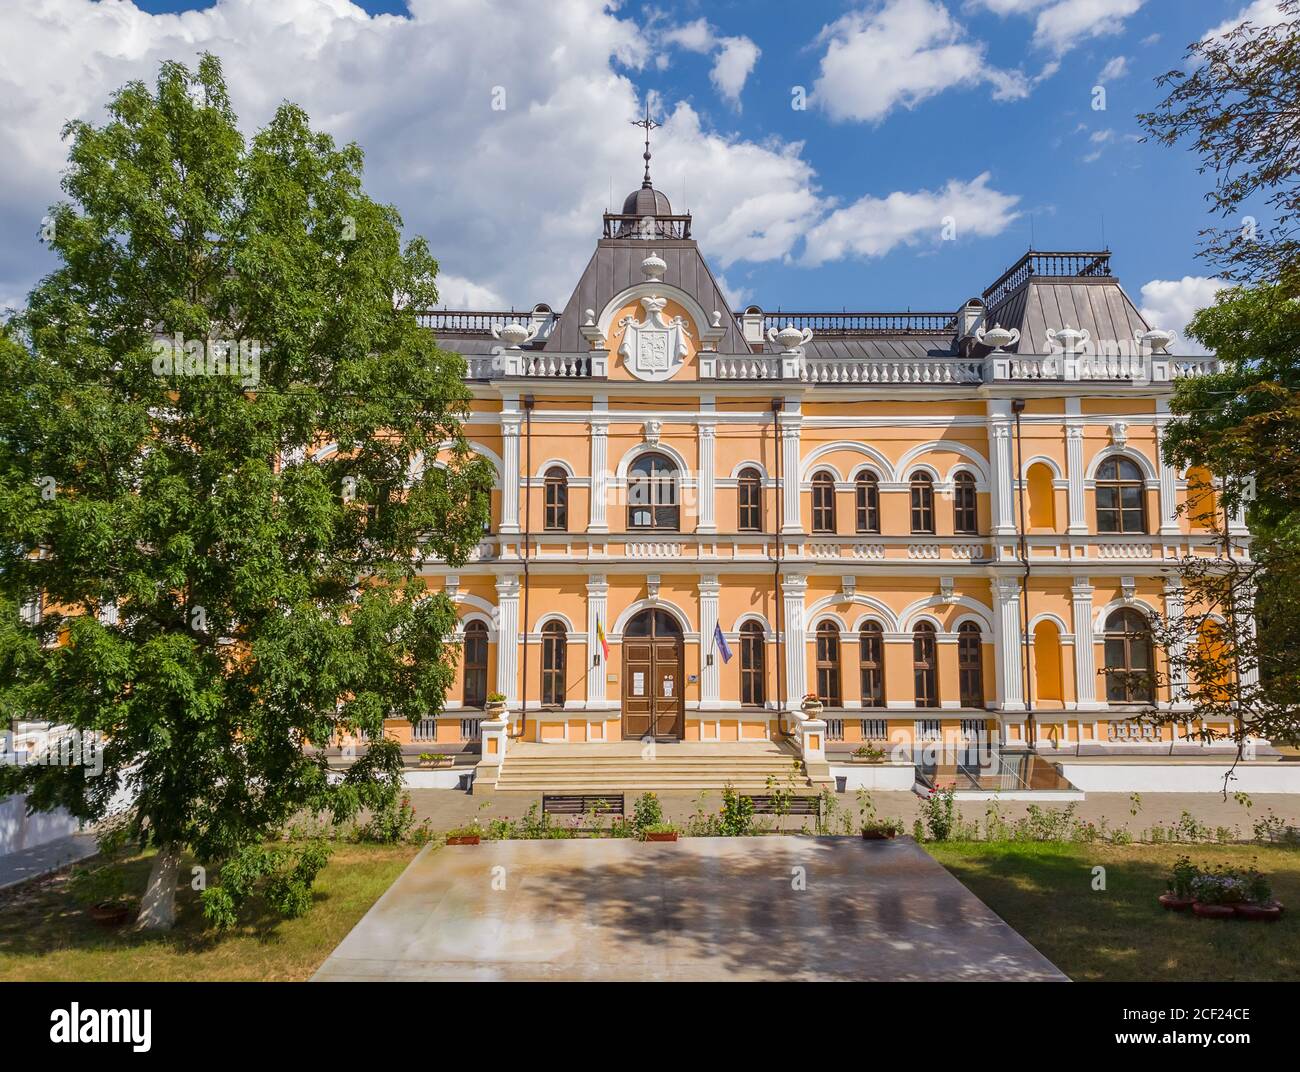 Il Manuc bei Mansion, un complesso architettonico, culturale e storico con museo, cantina e altri edifici situato nella città di Hincesti, Moldova. Manuc Foto Stock